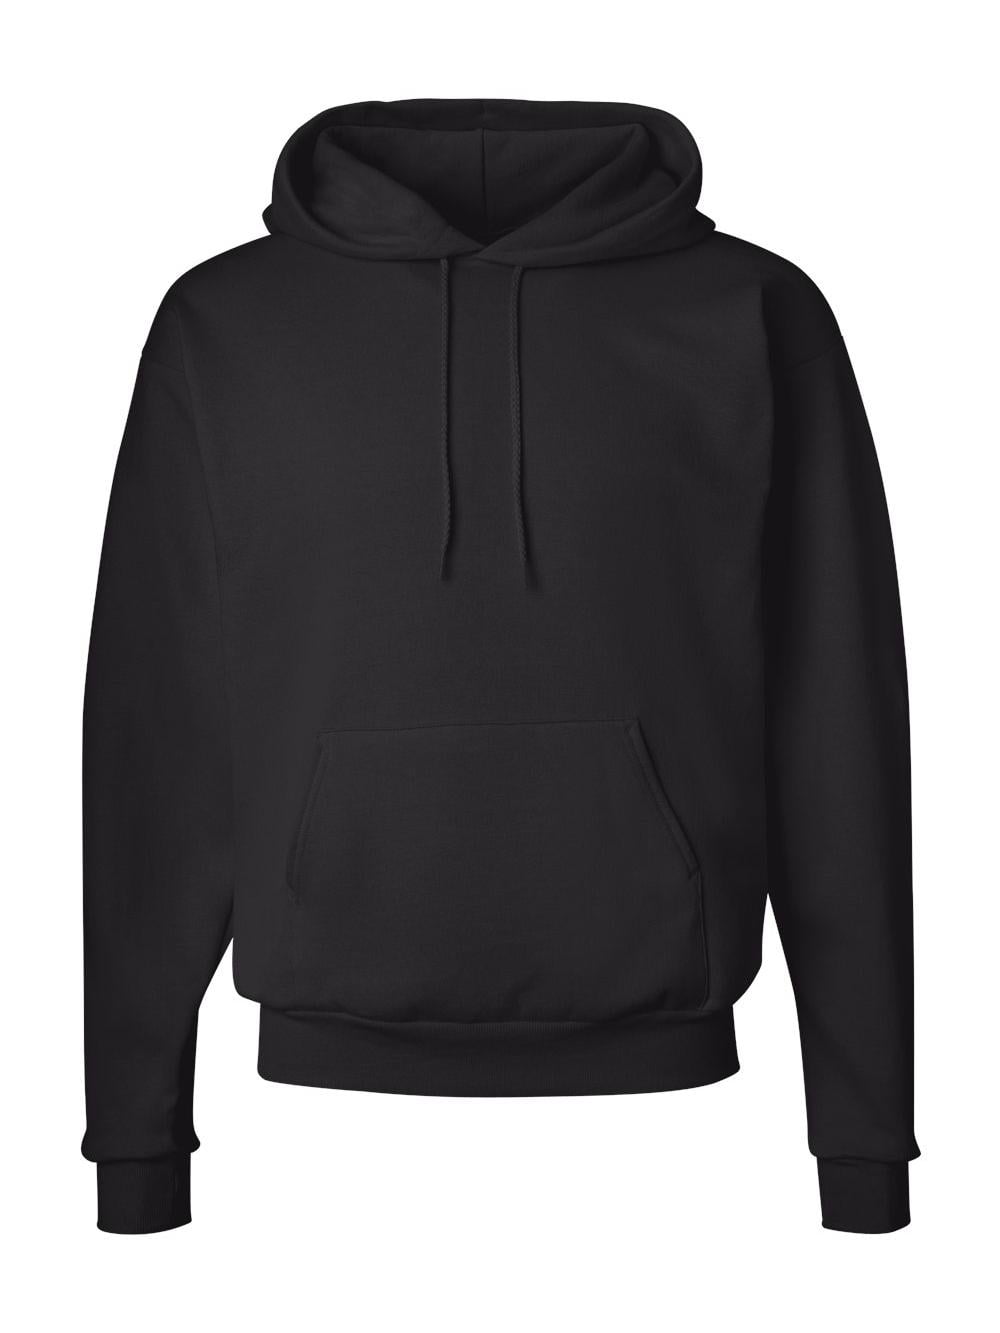 X-Large noir Hanes Men's pullover EcoSmart Polaire Sweat à capuche 